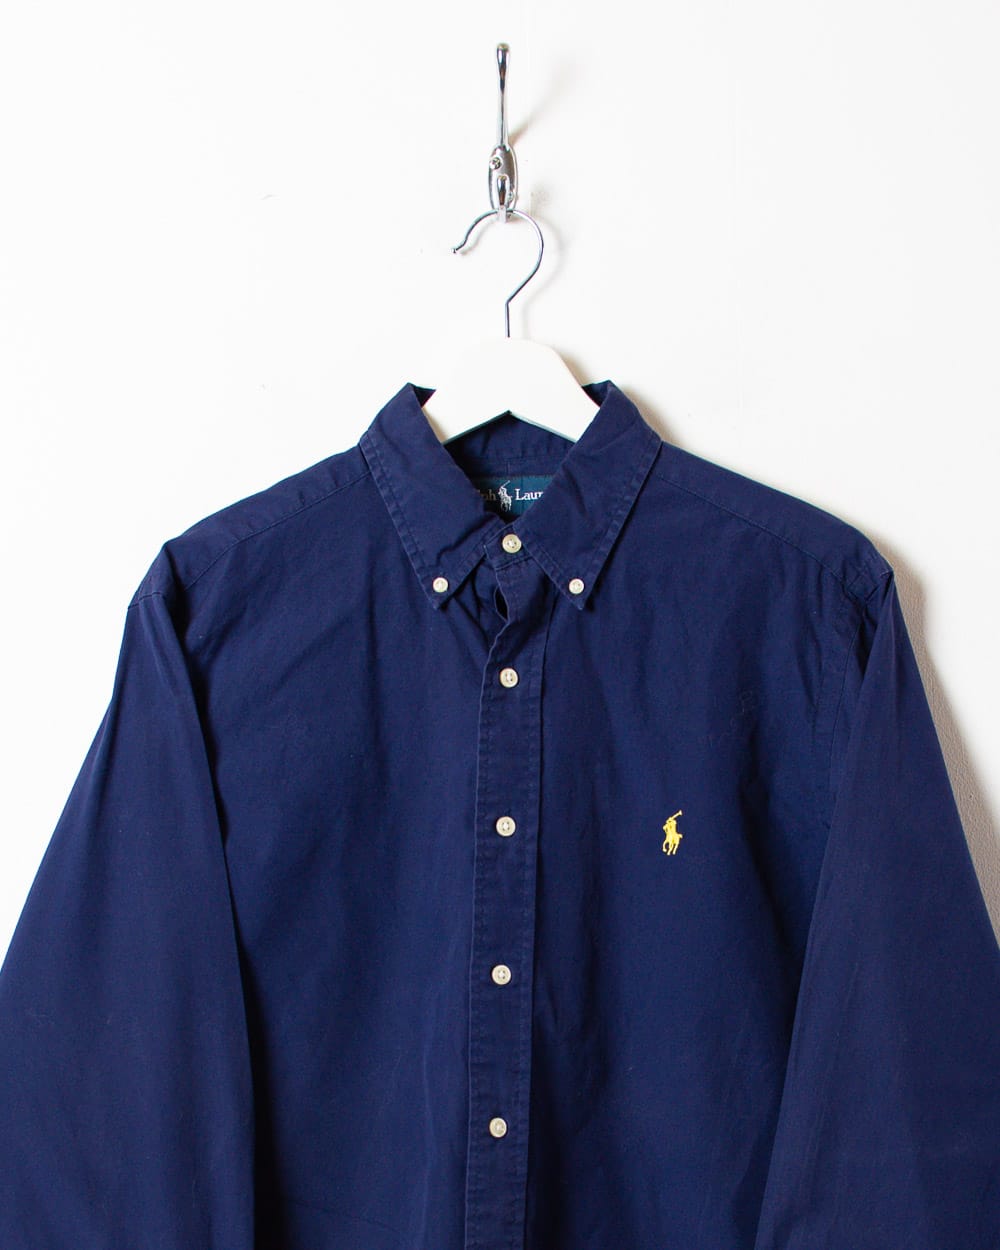 Navy Polo Ralph Lauren Shirt - Medium